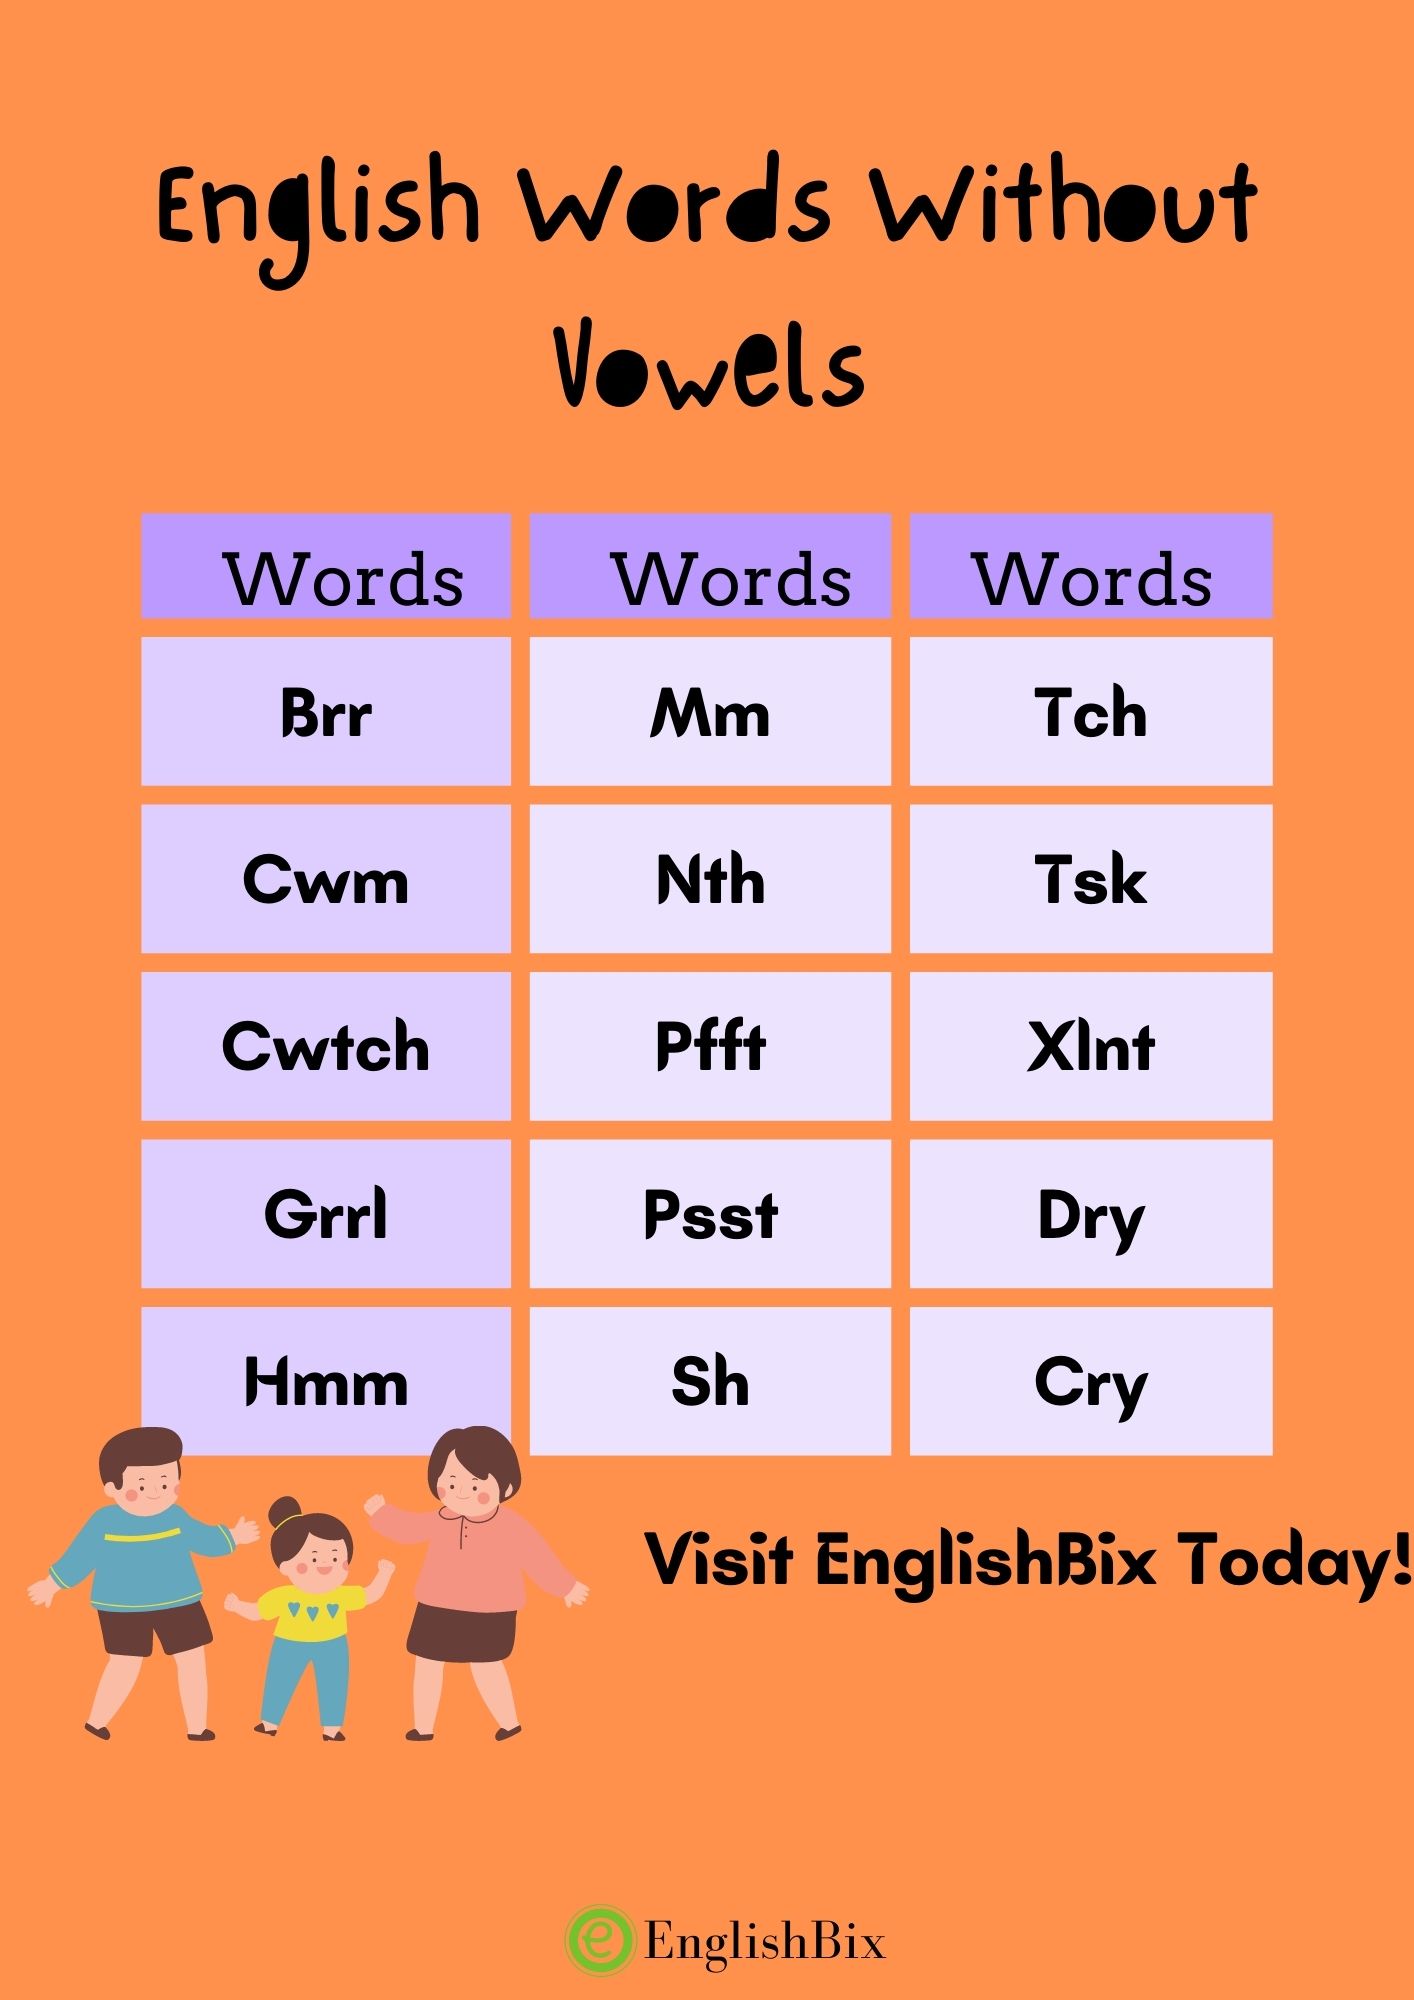 English Words Without Vowels - a e i o u List - EnglishBix